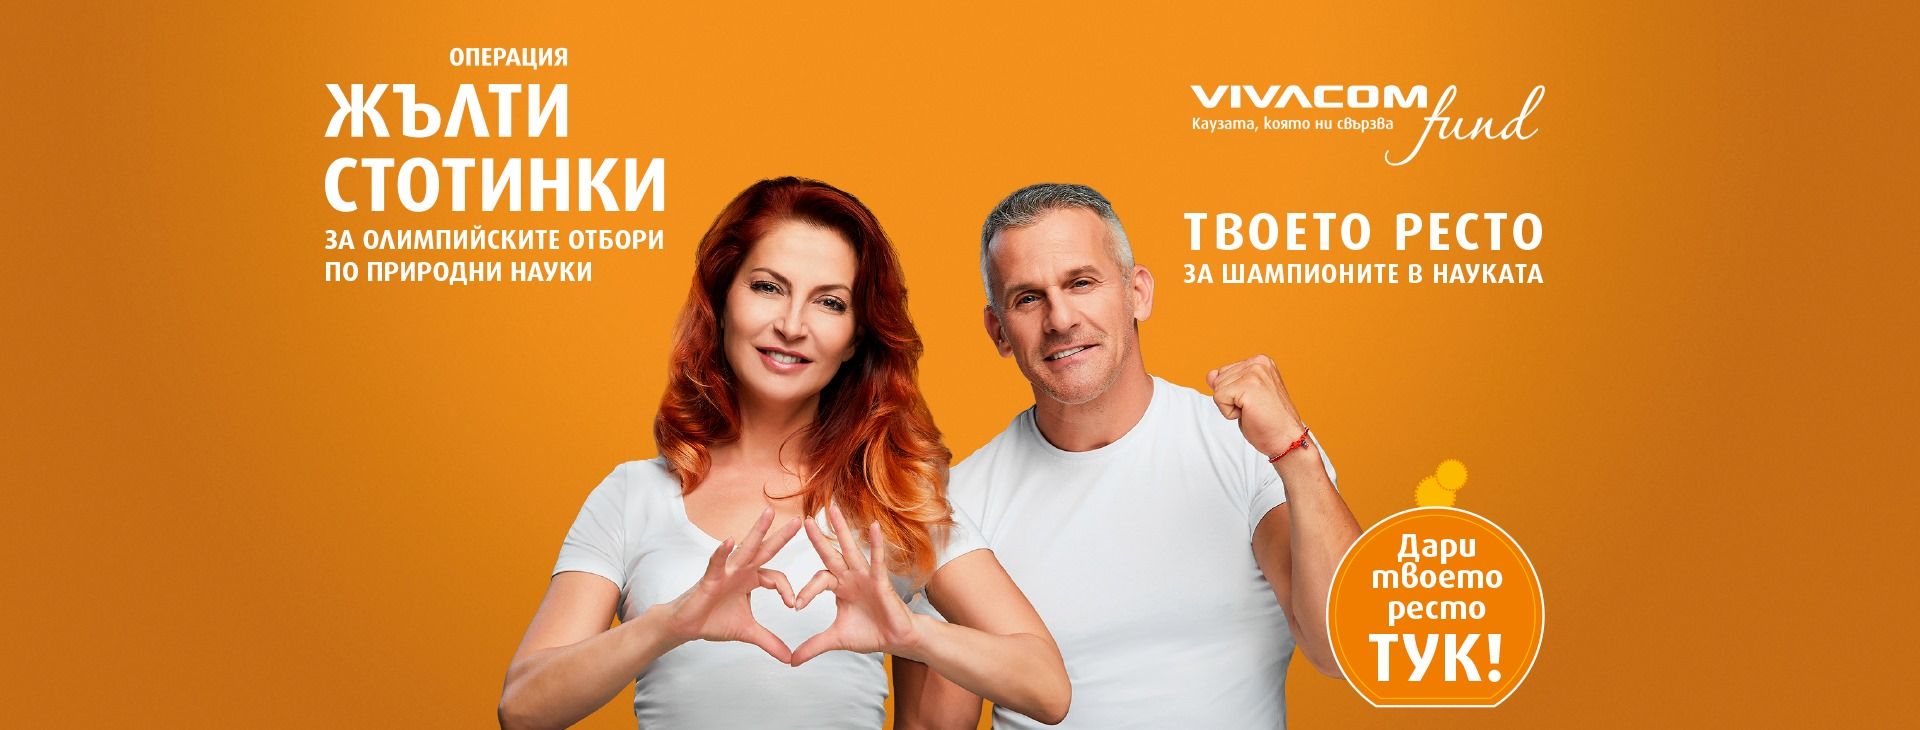 Ива Дойчинова и Йордан Йовчев са лица на благотворителната кампания